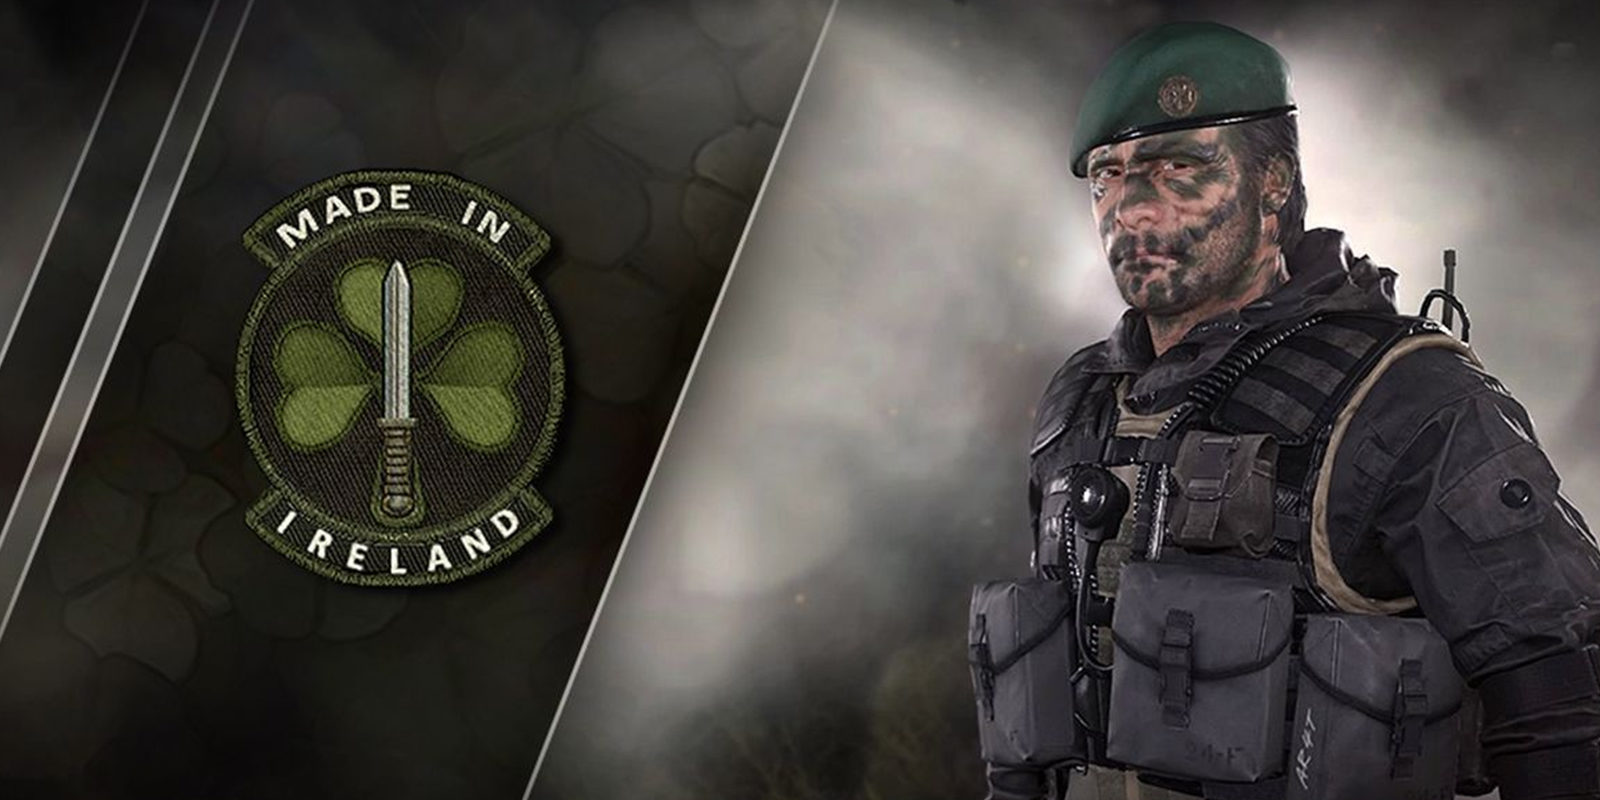 Celebra el día de San Patricio con Call of Duty: Modern Warfare Remastered